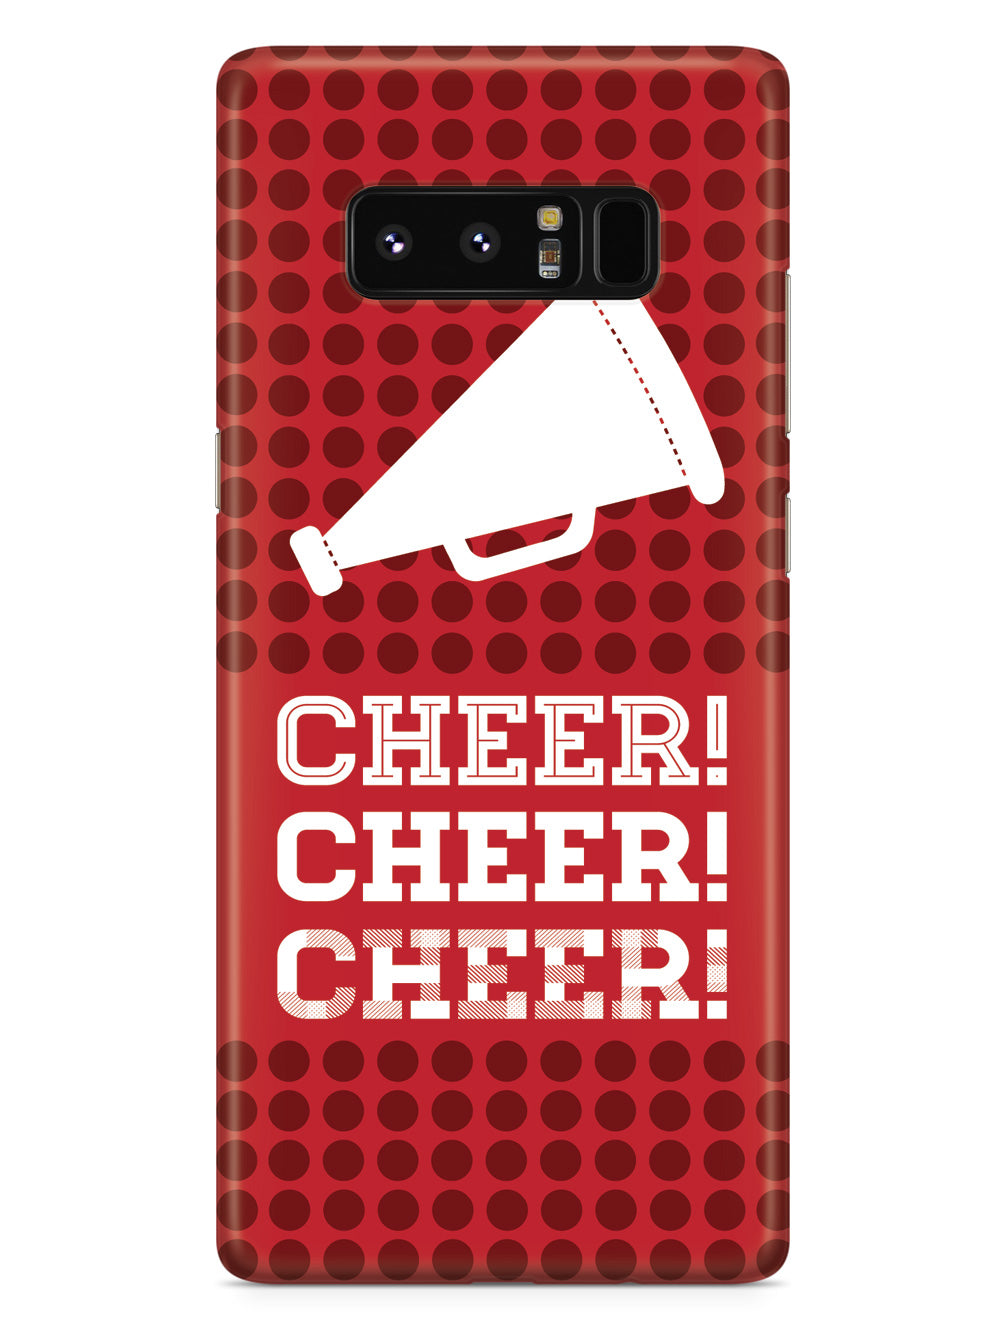 Cheer! Cheer! Cheer! Design Cheerleading Case